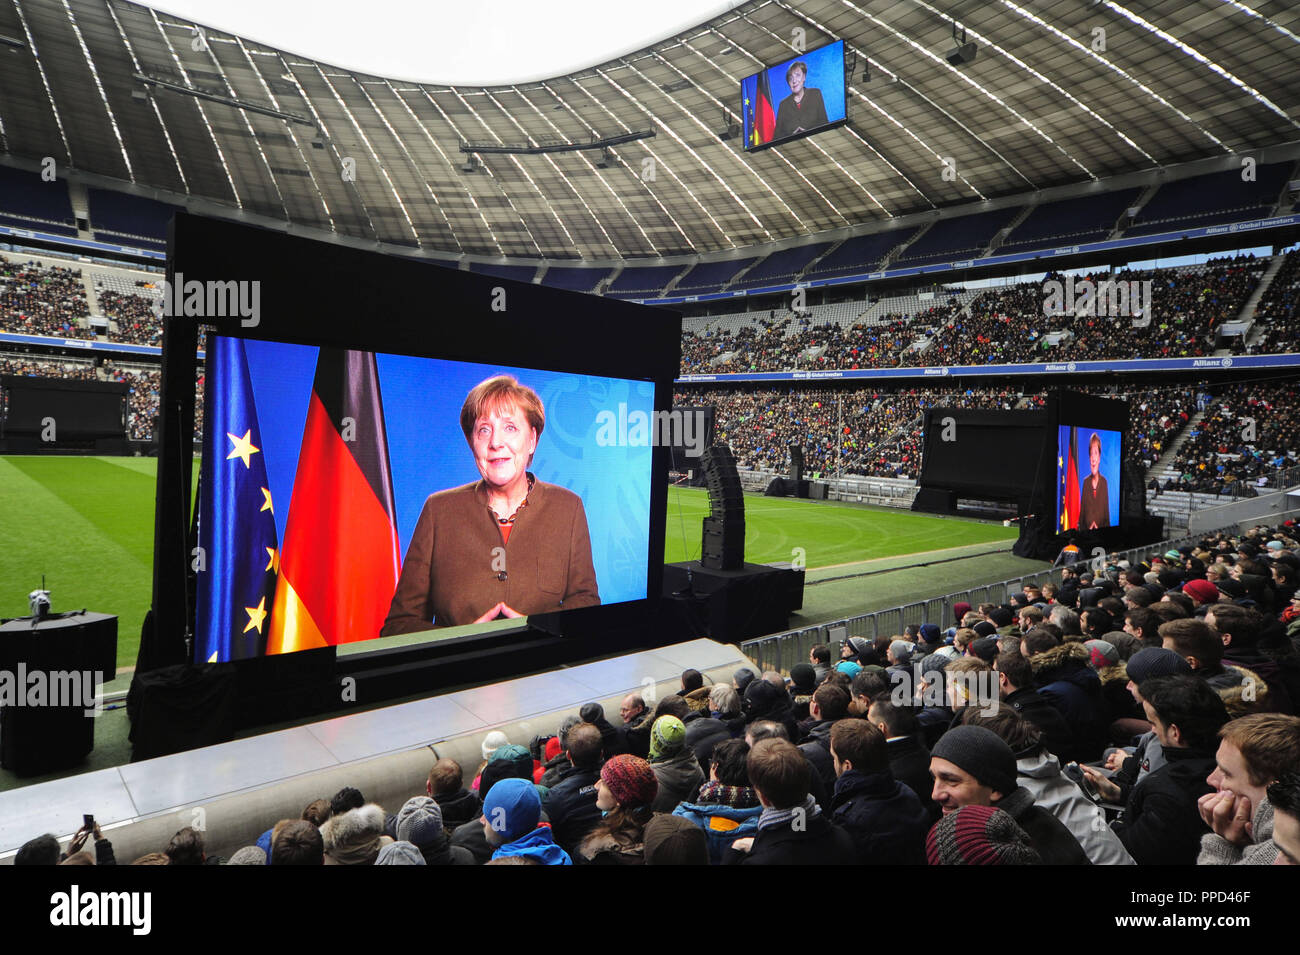 Come parte della celebrazione dell anniversario "prossimi cento anni' sulla società il centesimo compleanno di 35.000 dipendenti BMW seguire nell'Allianz Arena, la trasmissione in diretta della cerimonia ufficiale da Olympic Hall. Nella foto, un video messaggio di saluto del Cancelliere federale Angela Merkel. Foto Stock